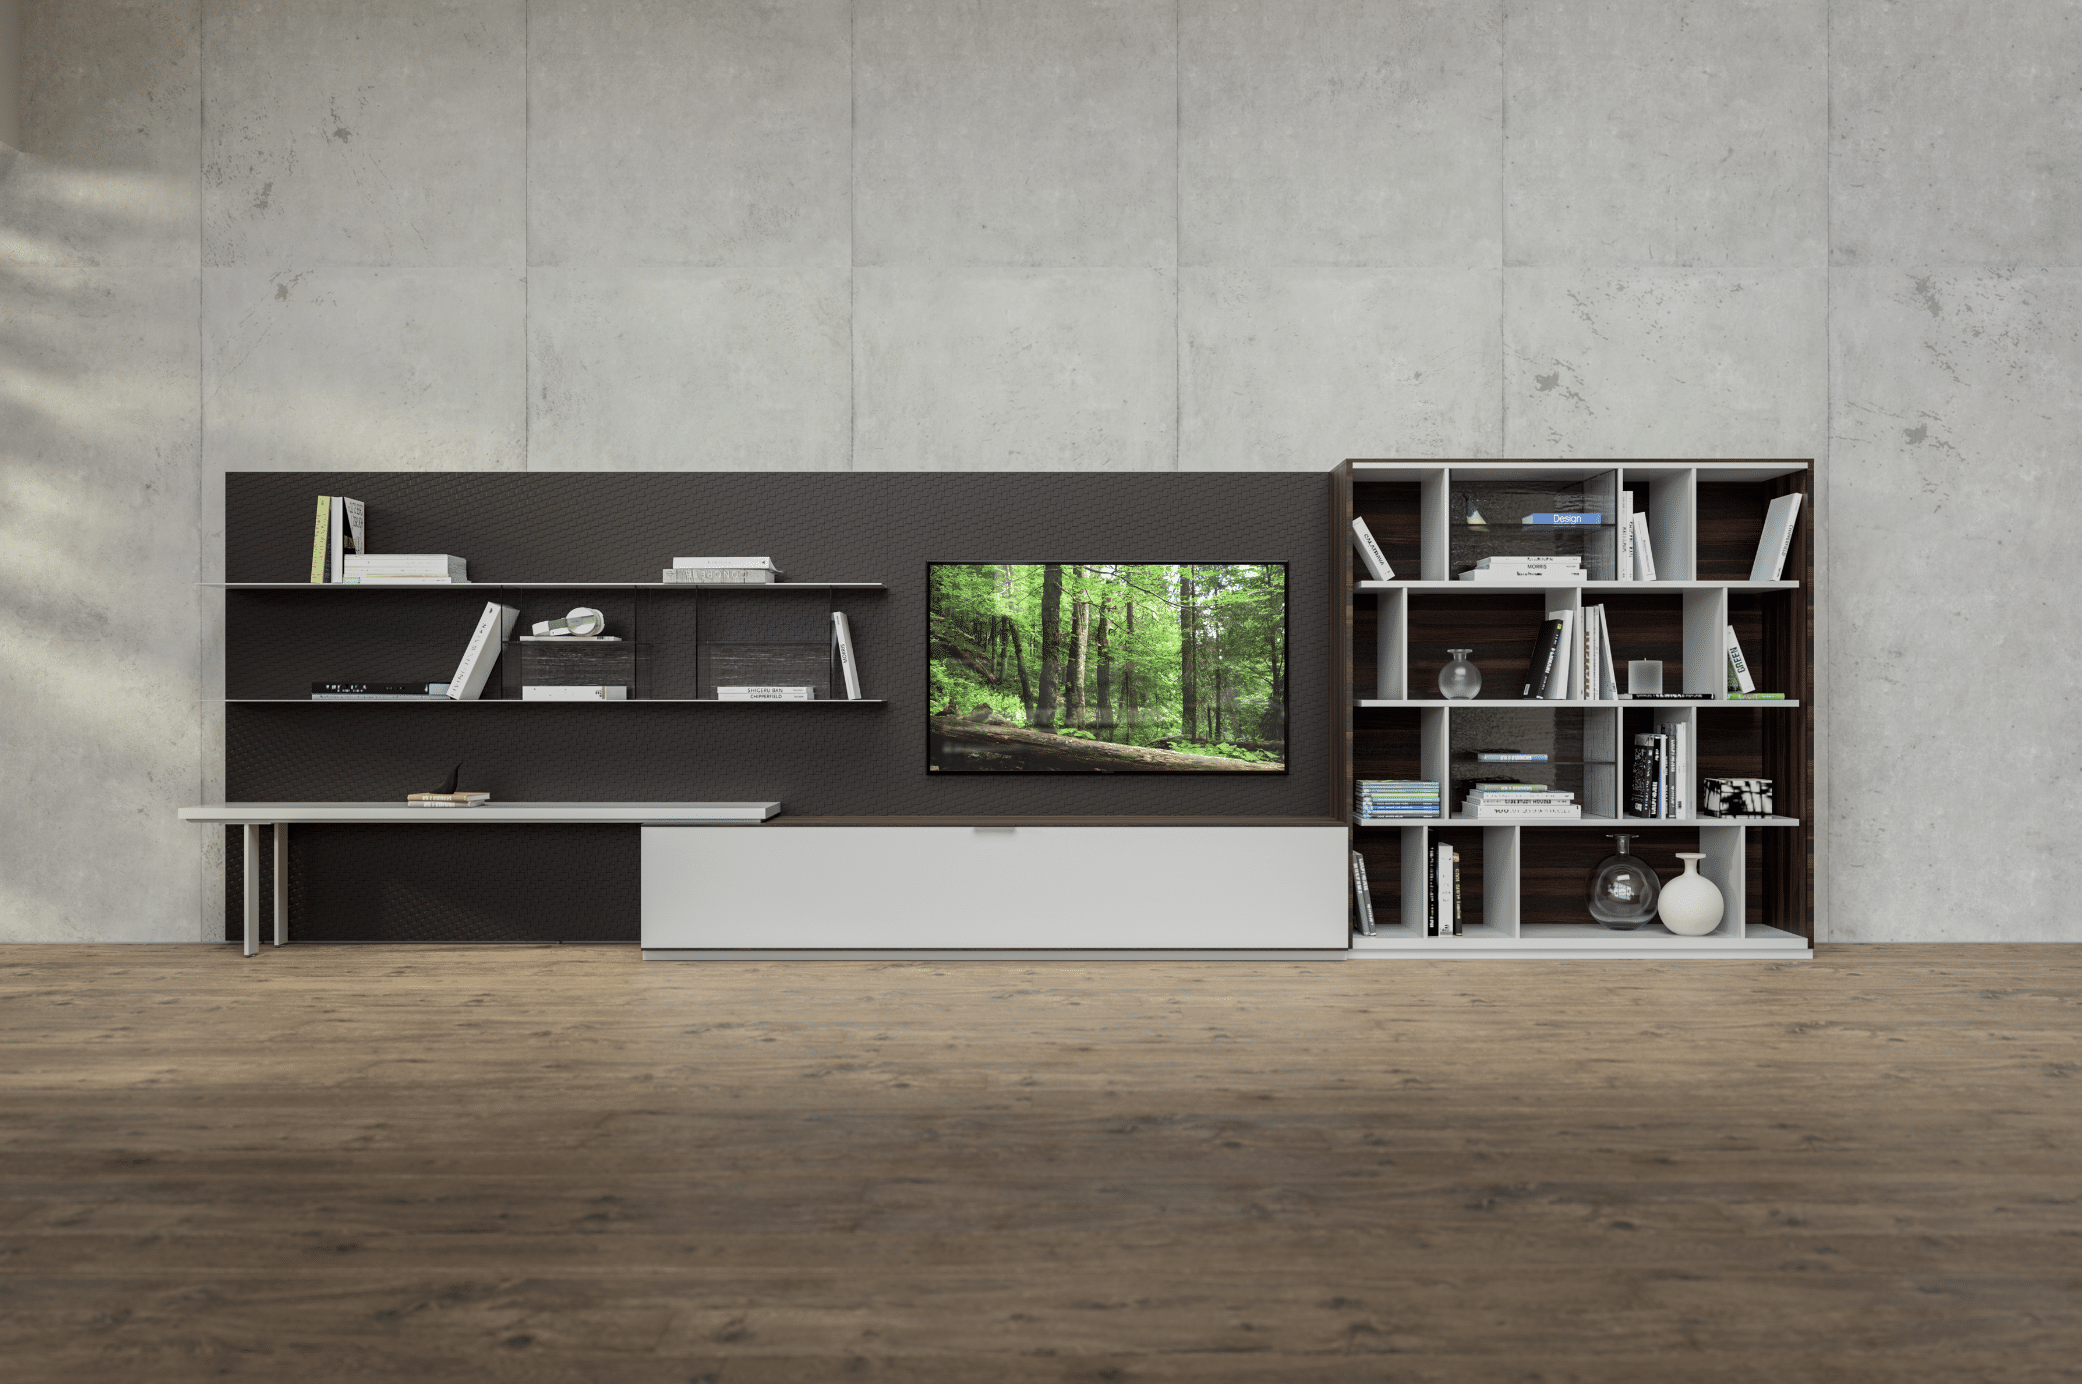 Keplinger zeigt eine Wohnwand aus Holz mit Lasergravur in einem Wohnzimmer mit Holzboden und Betonwand im Industrial Style.